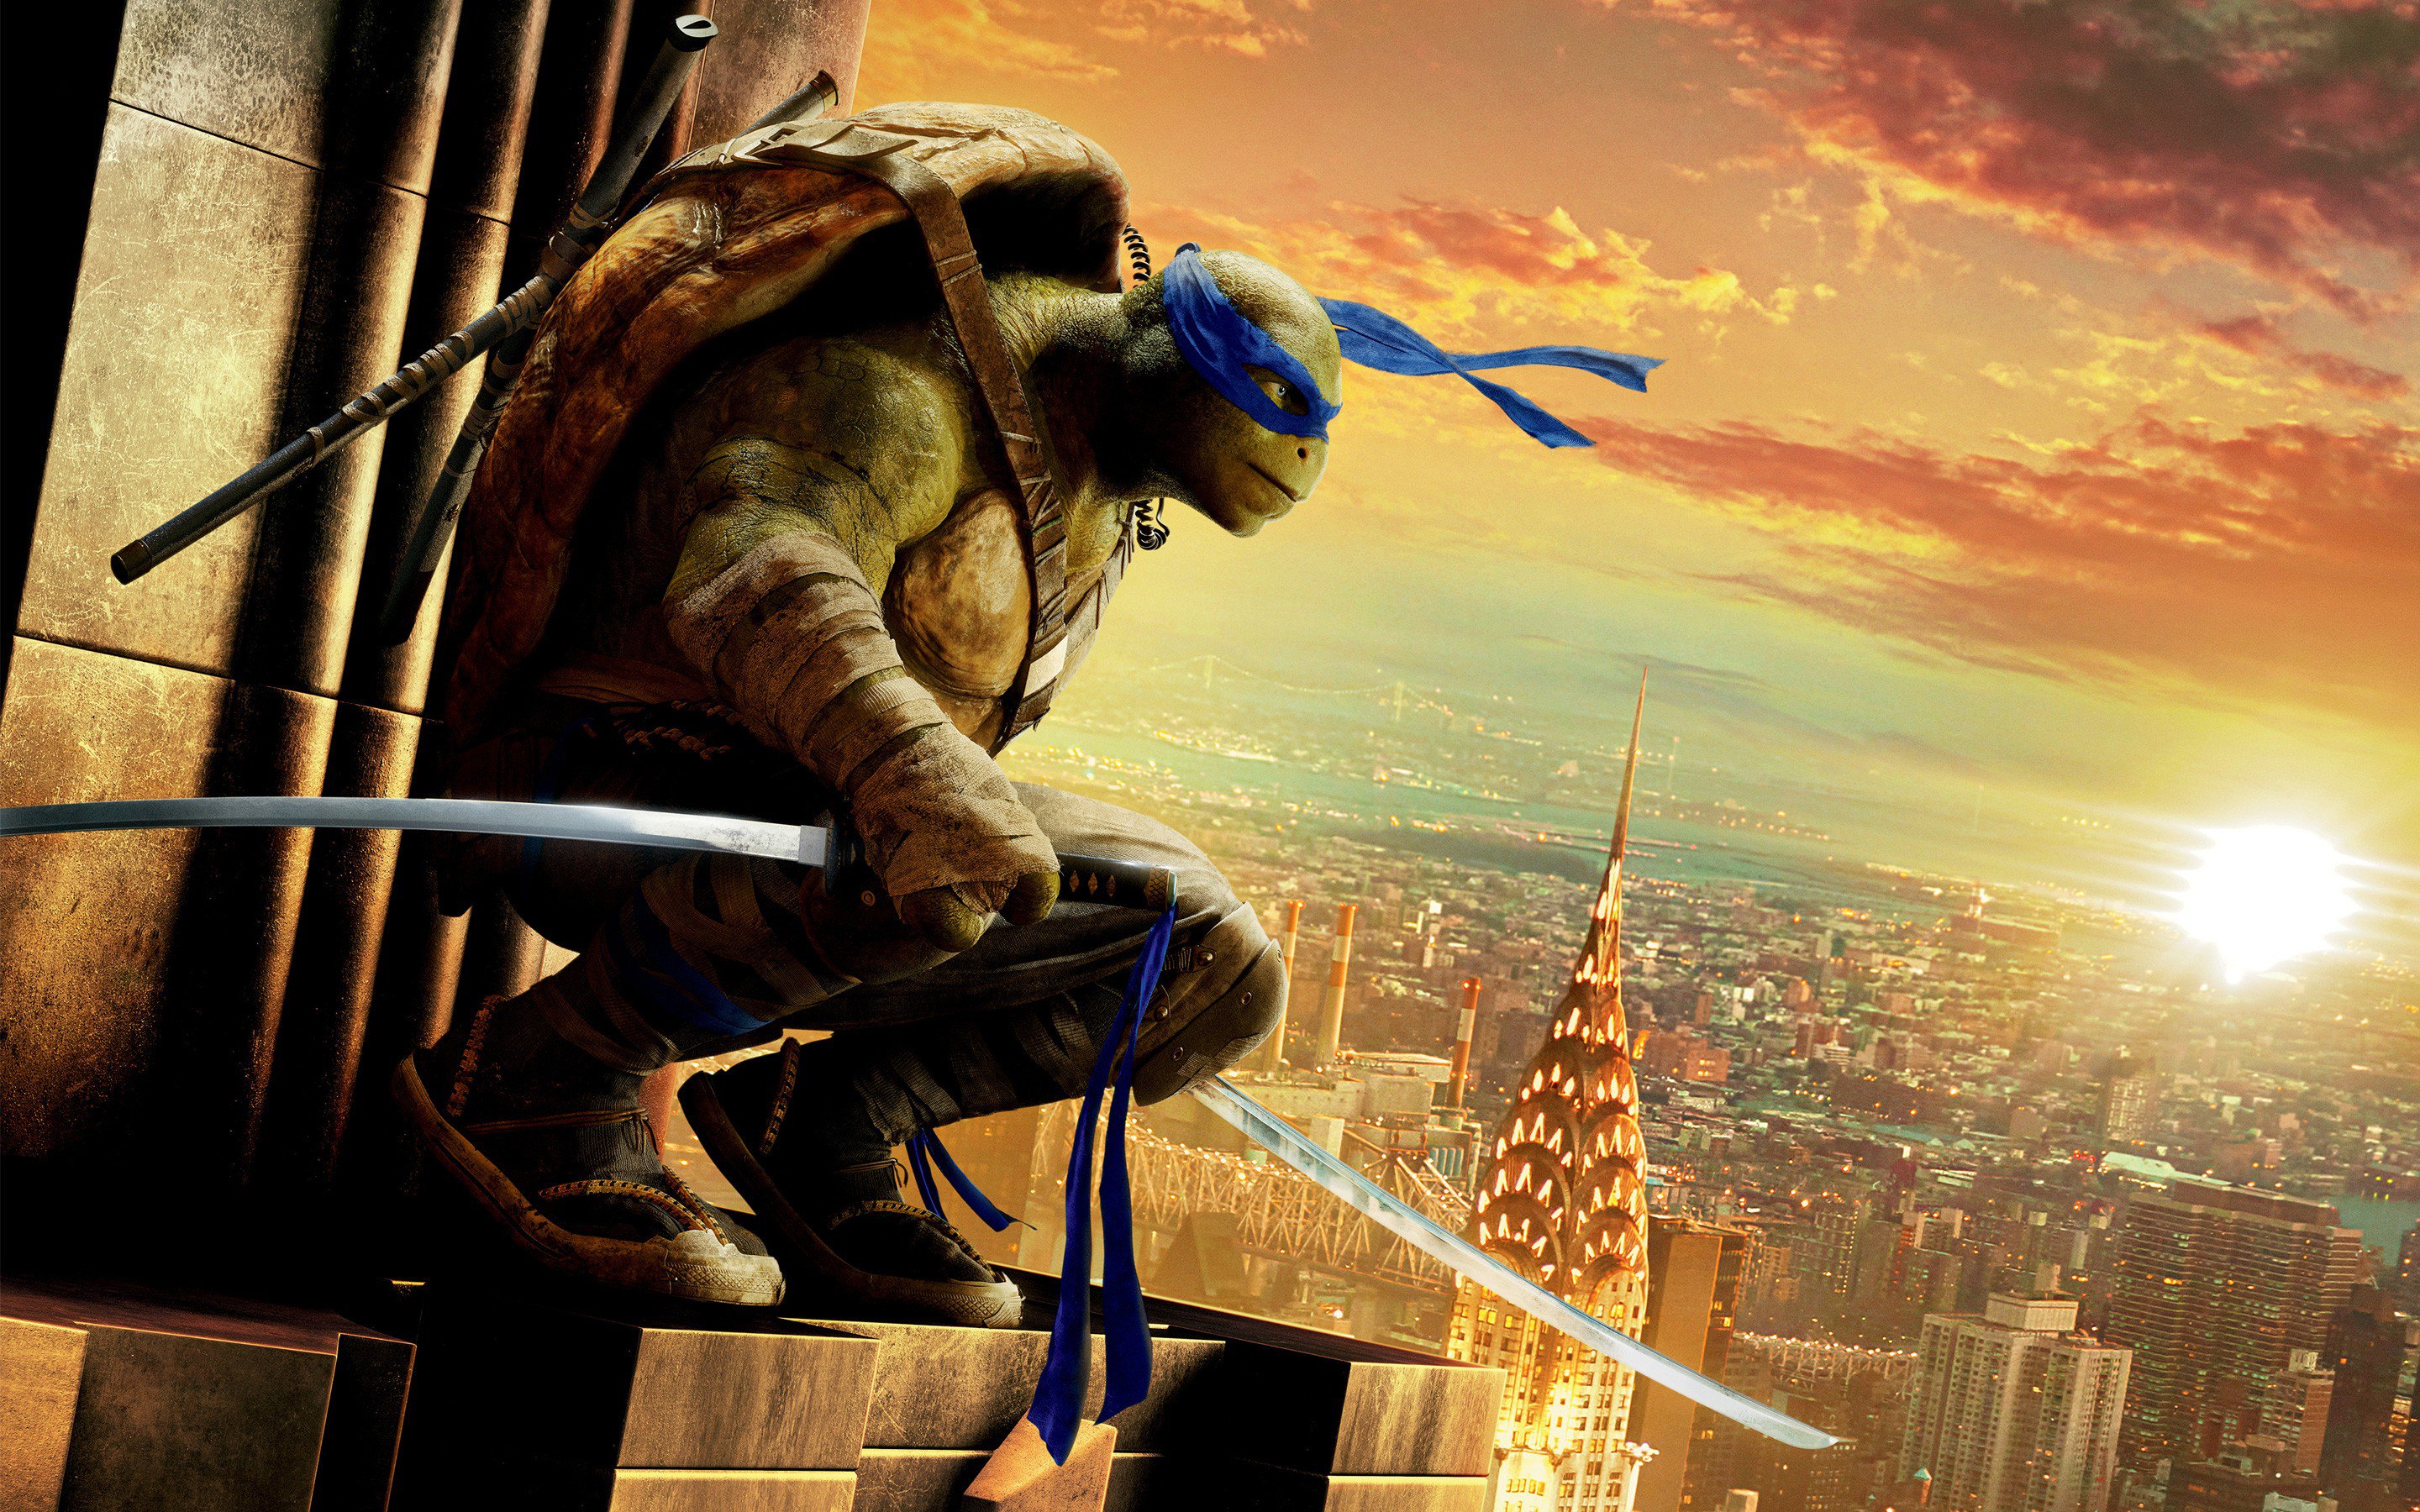 Wallpapers teenage mutant ninja turtles ninja turtle movies on the desktop